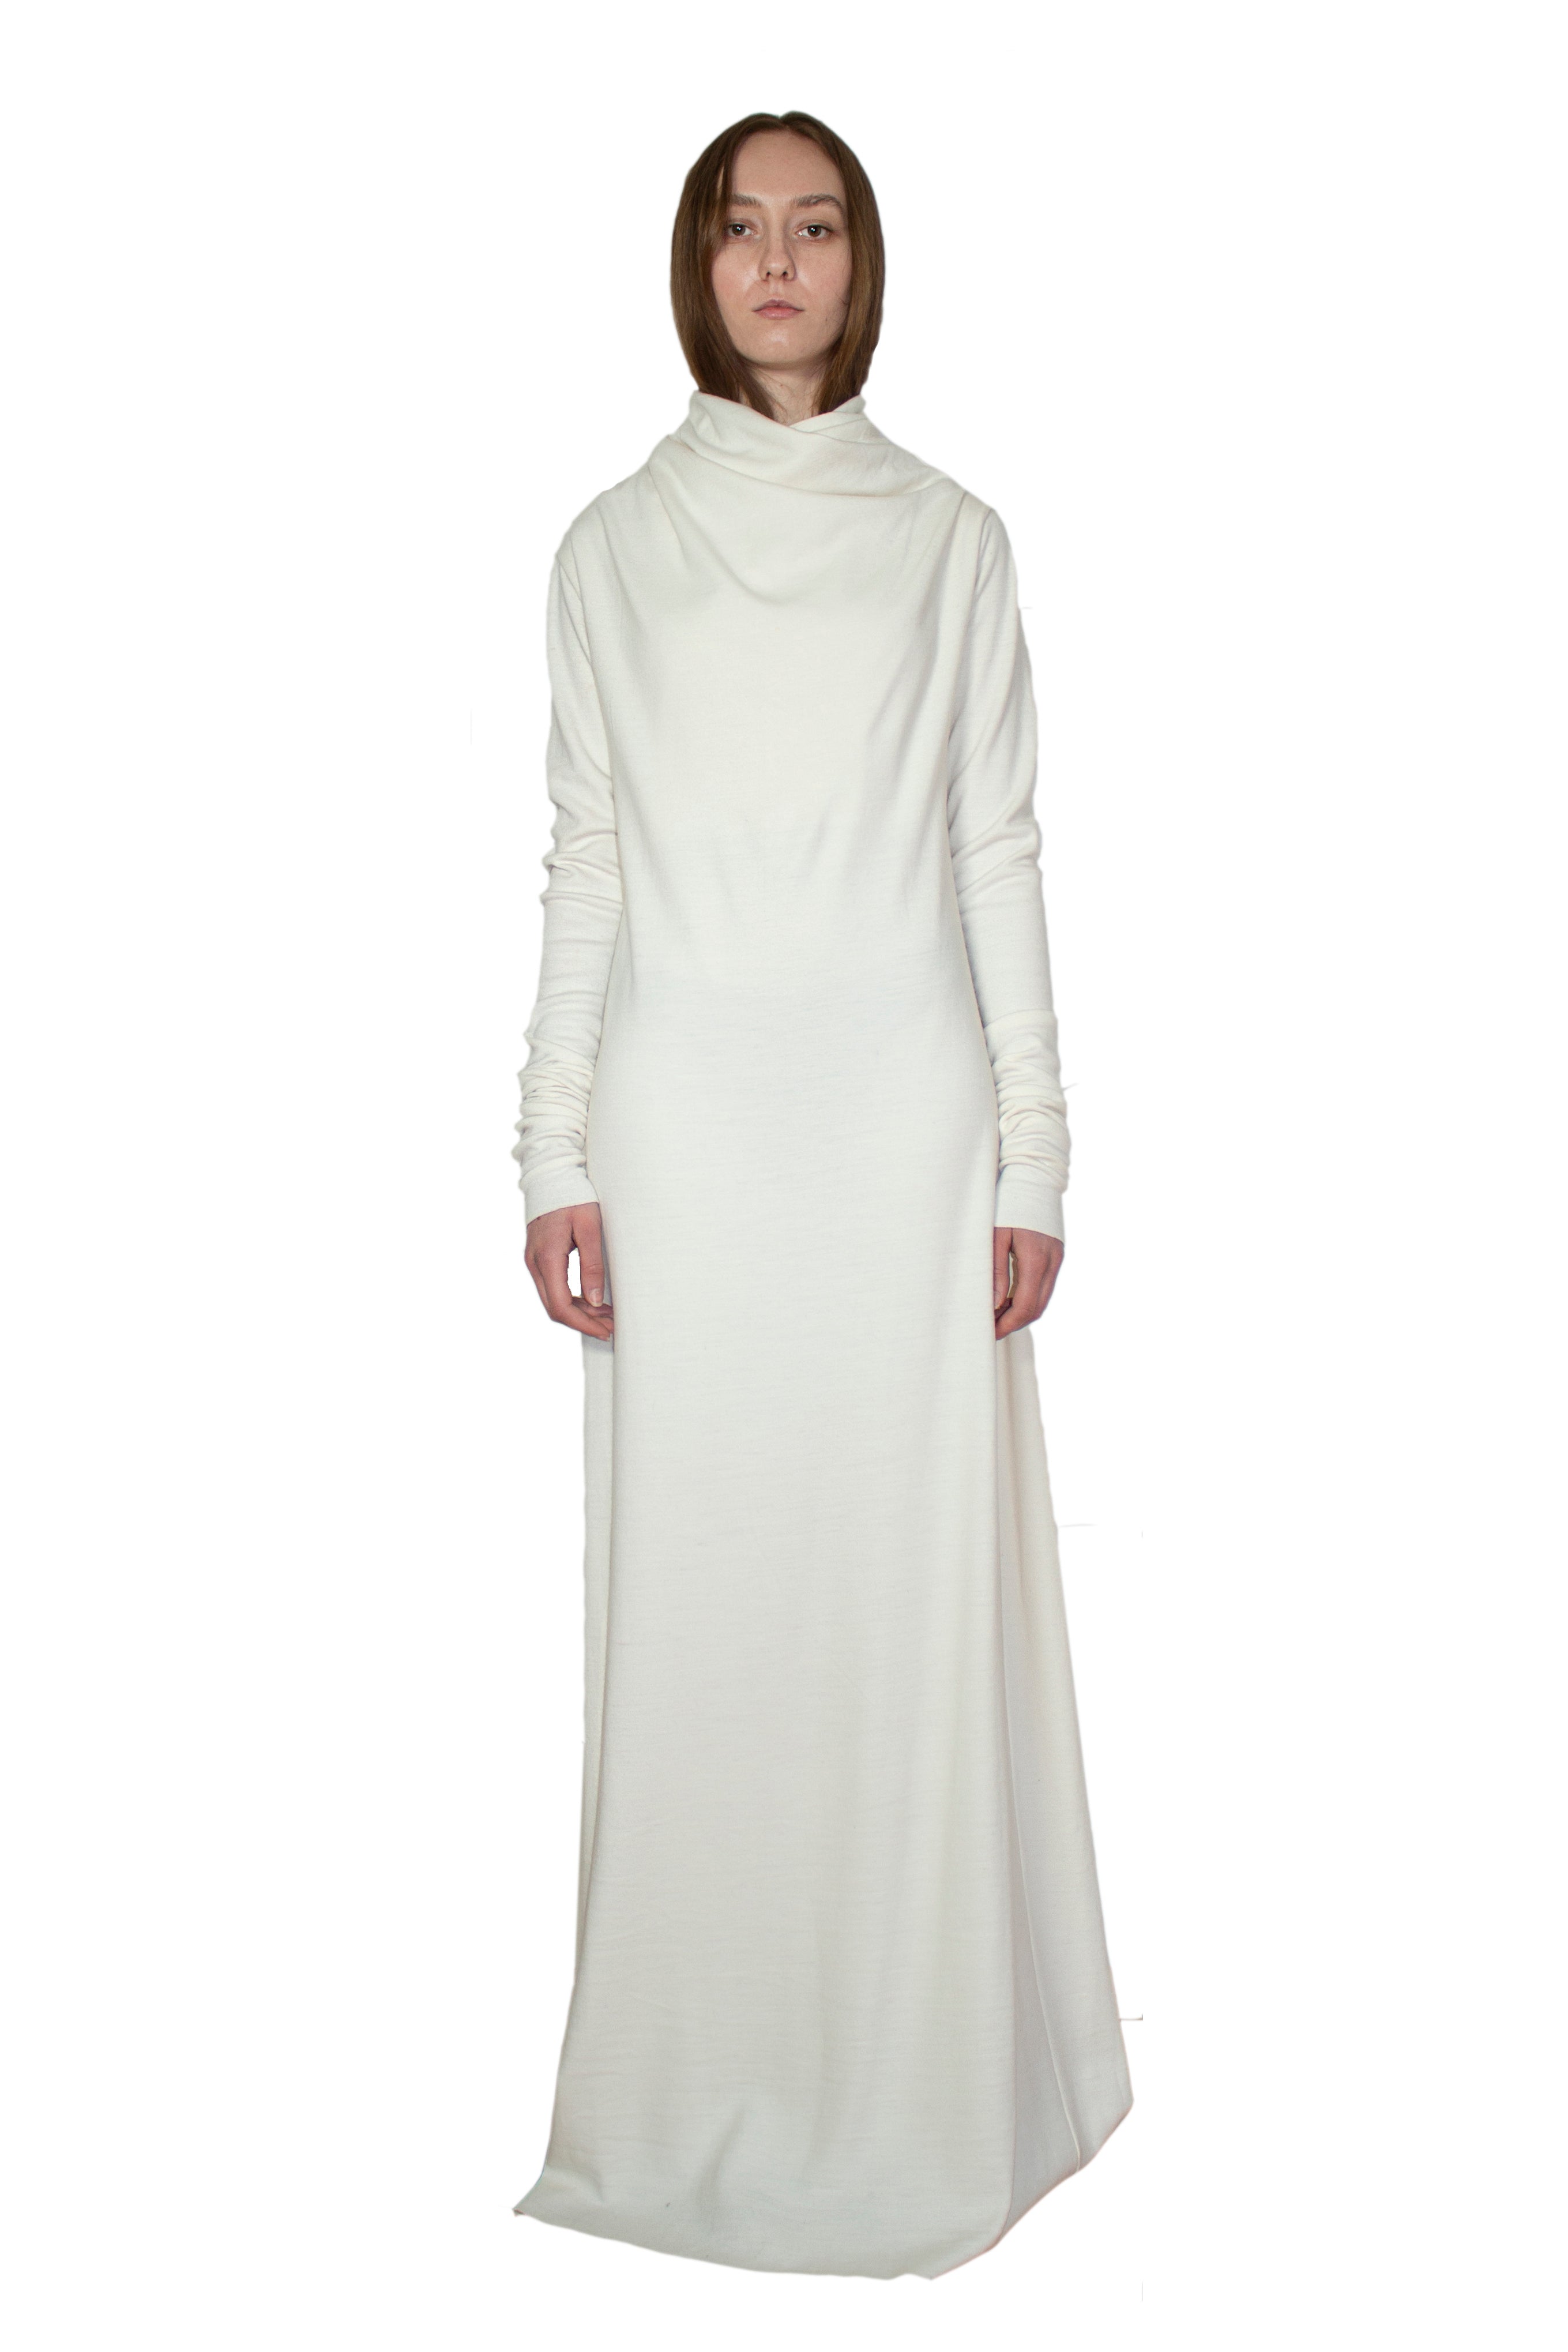 White circular-drape wool dress